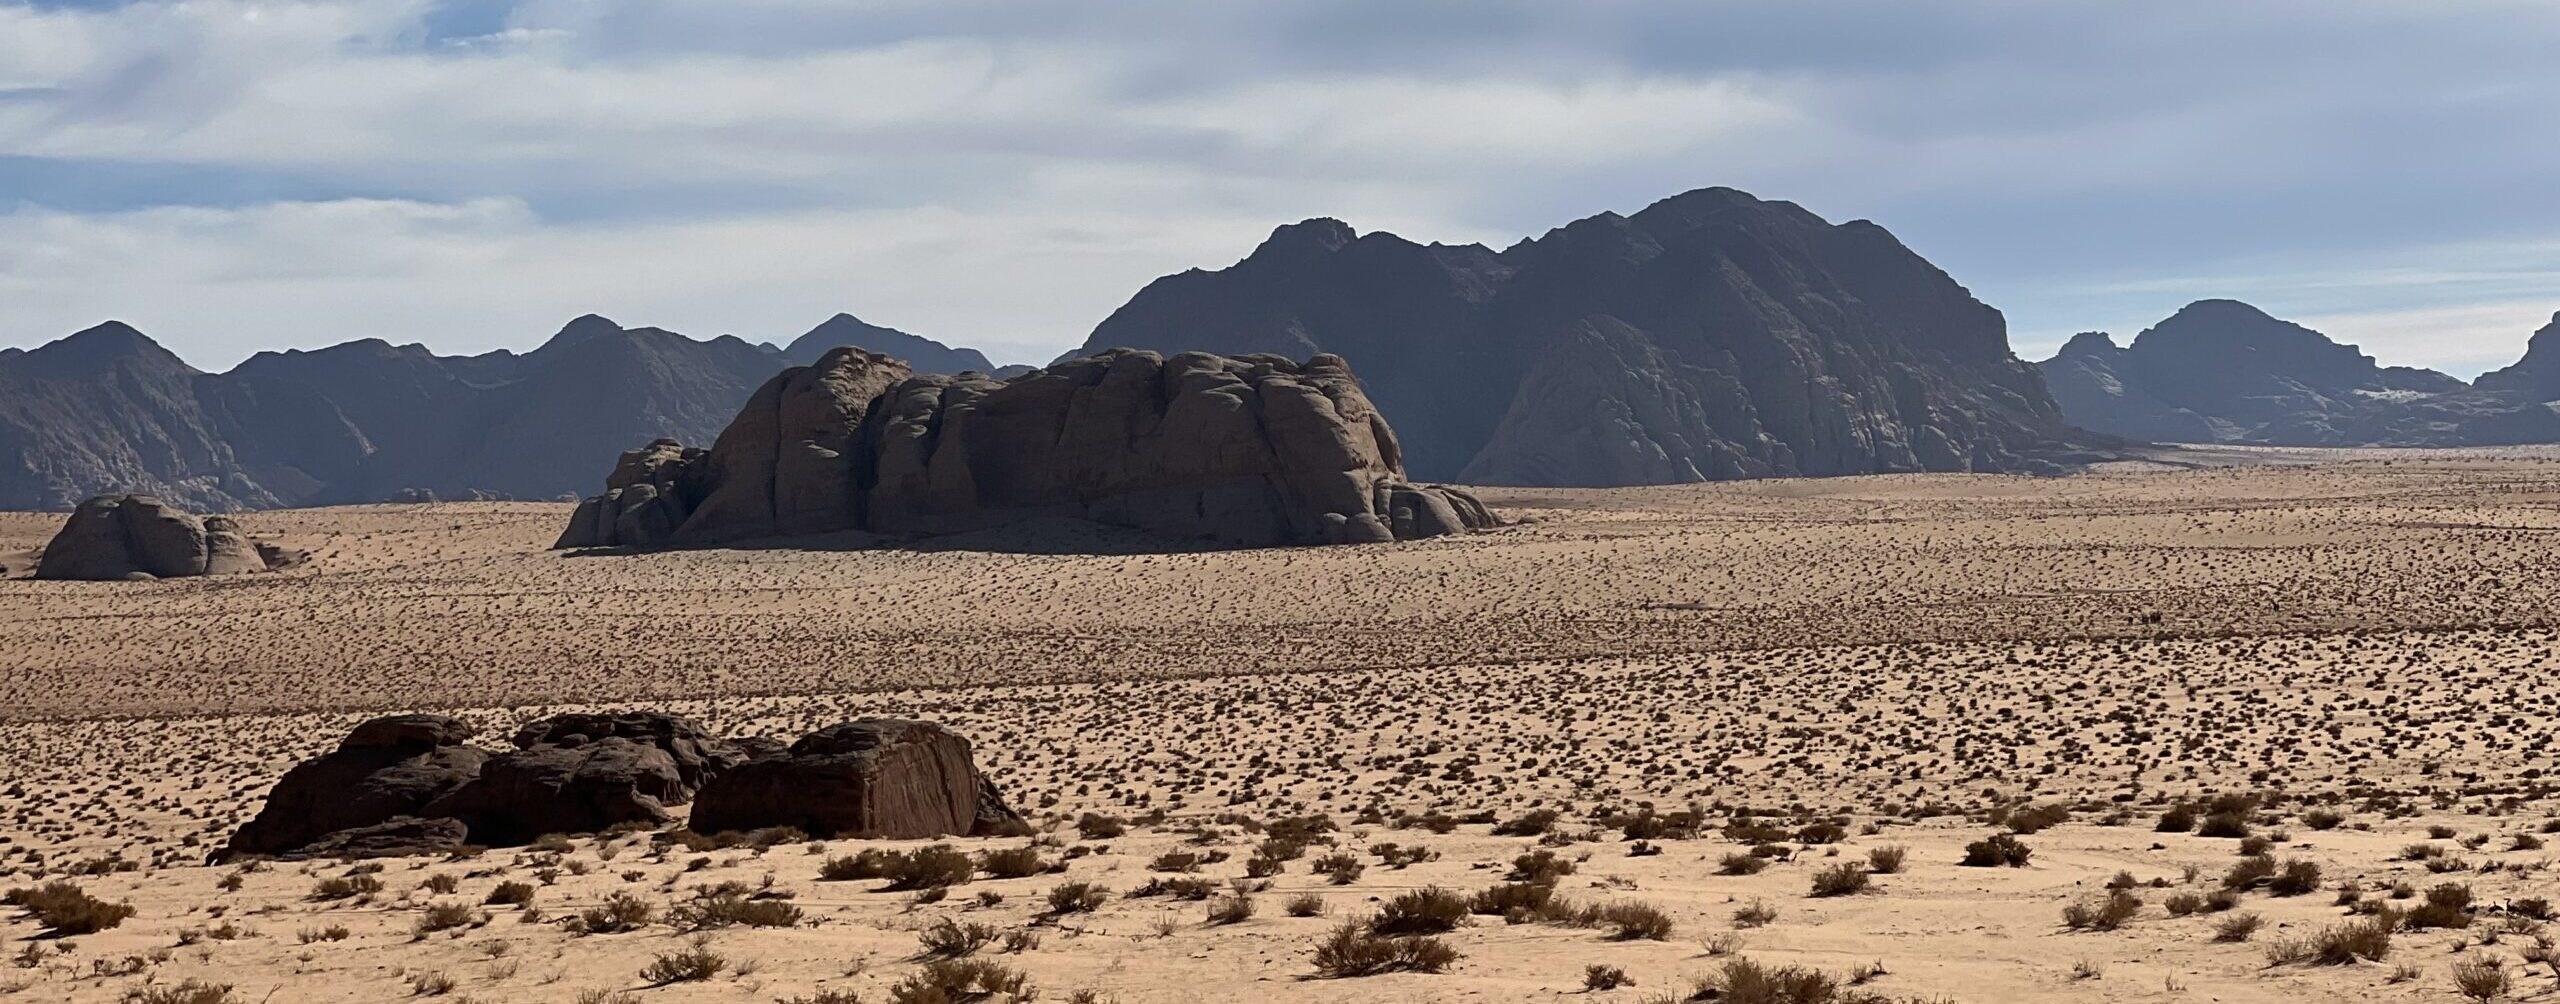 Al Hash Desert Landscape